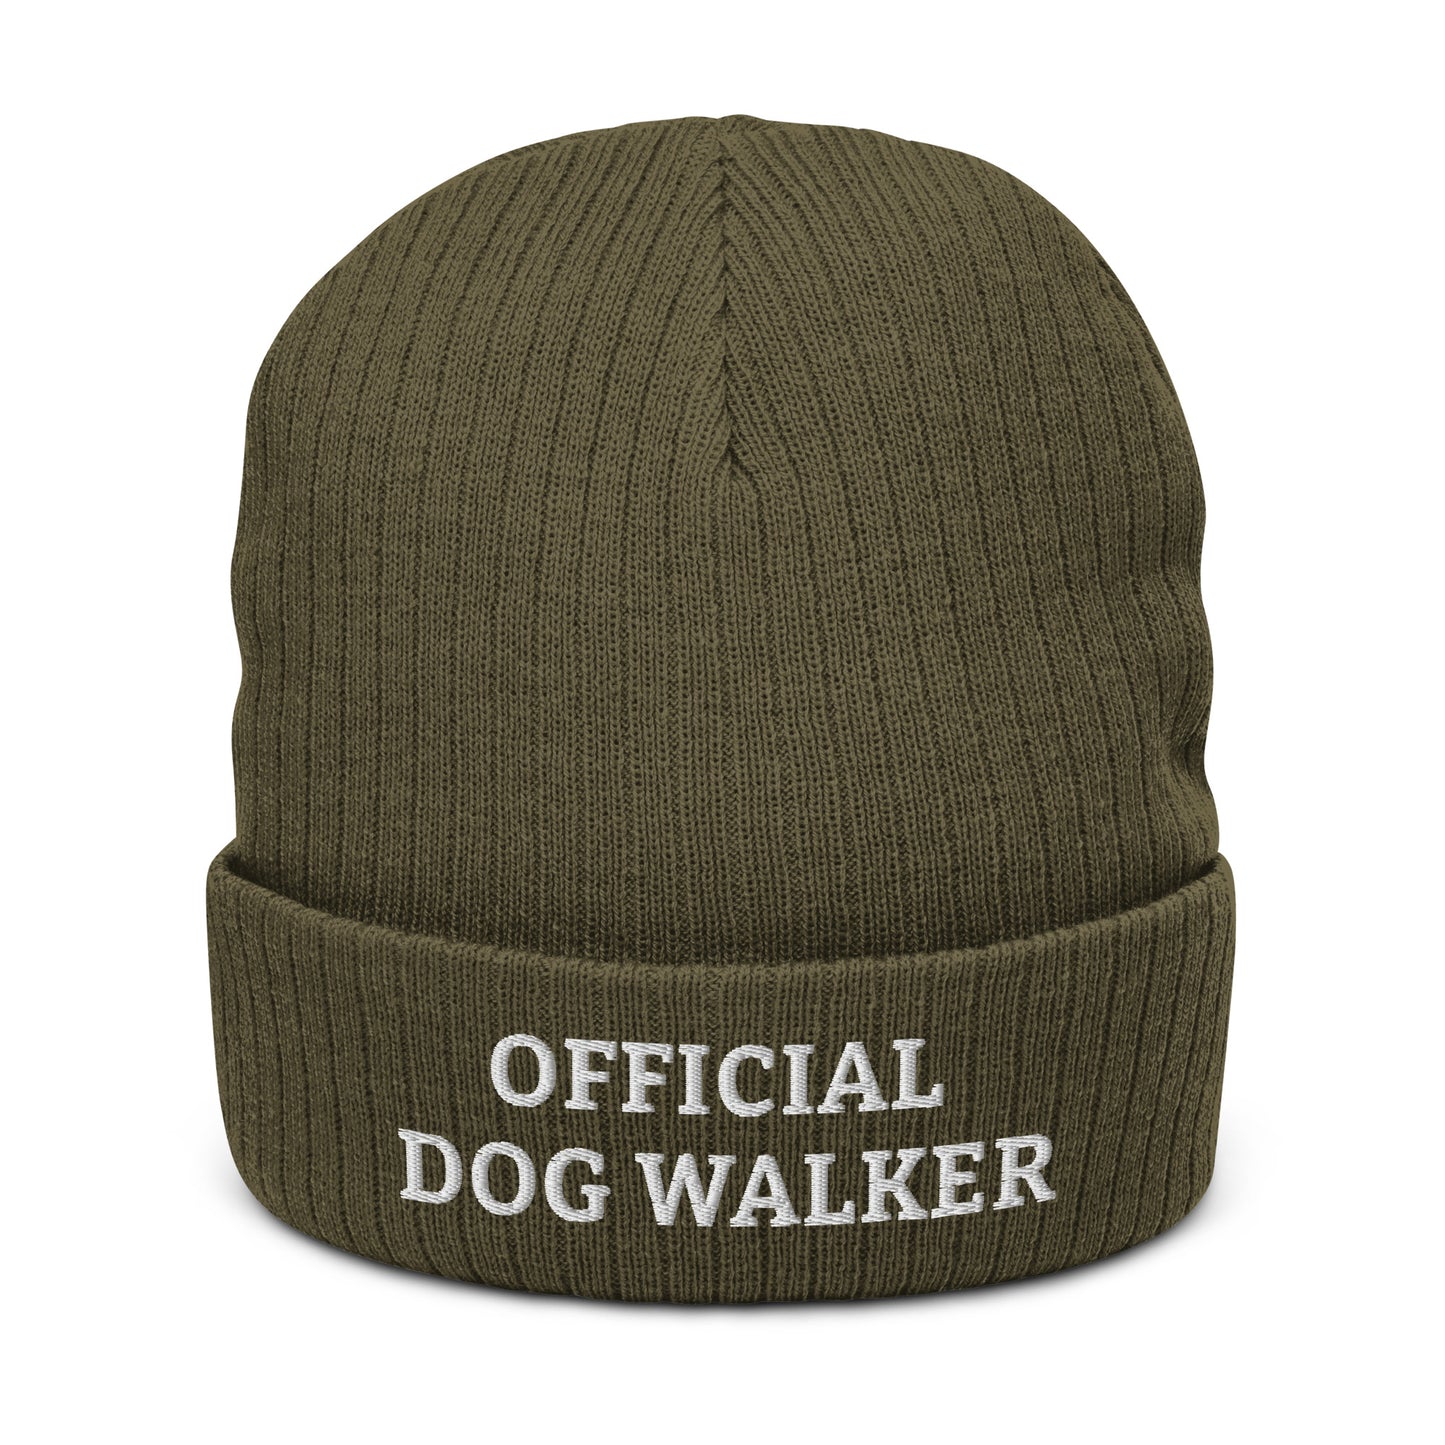 Dog Walker beanie